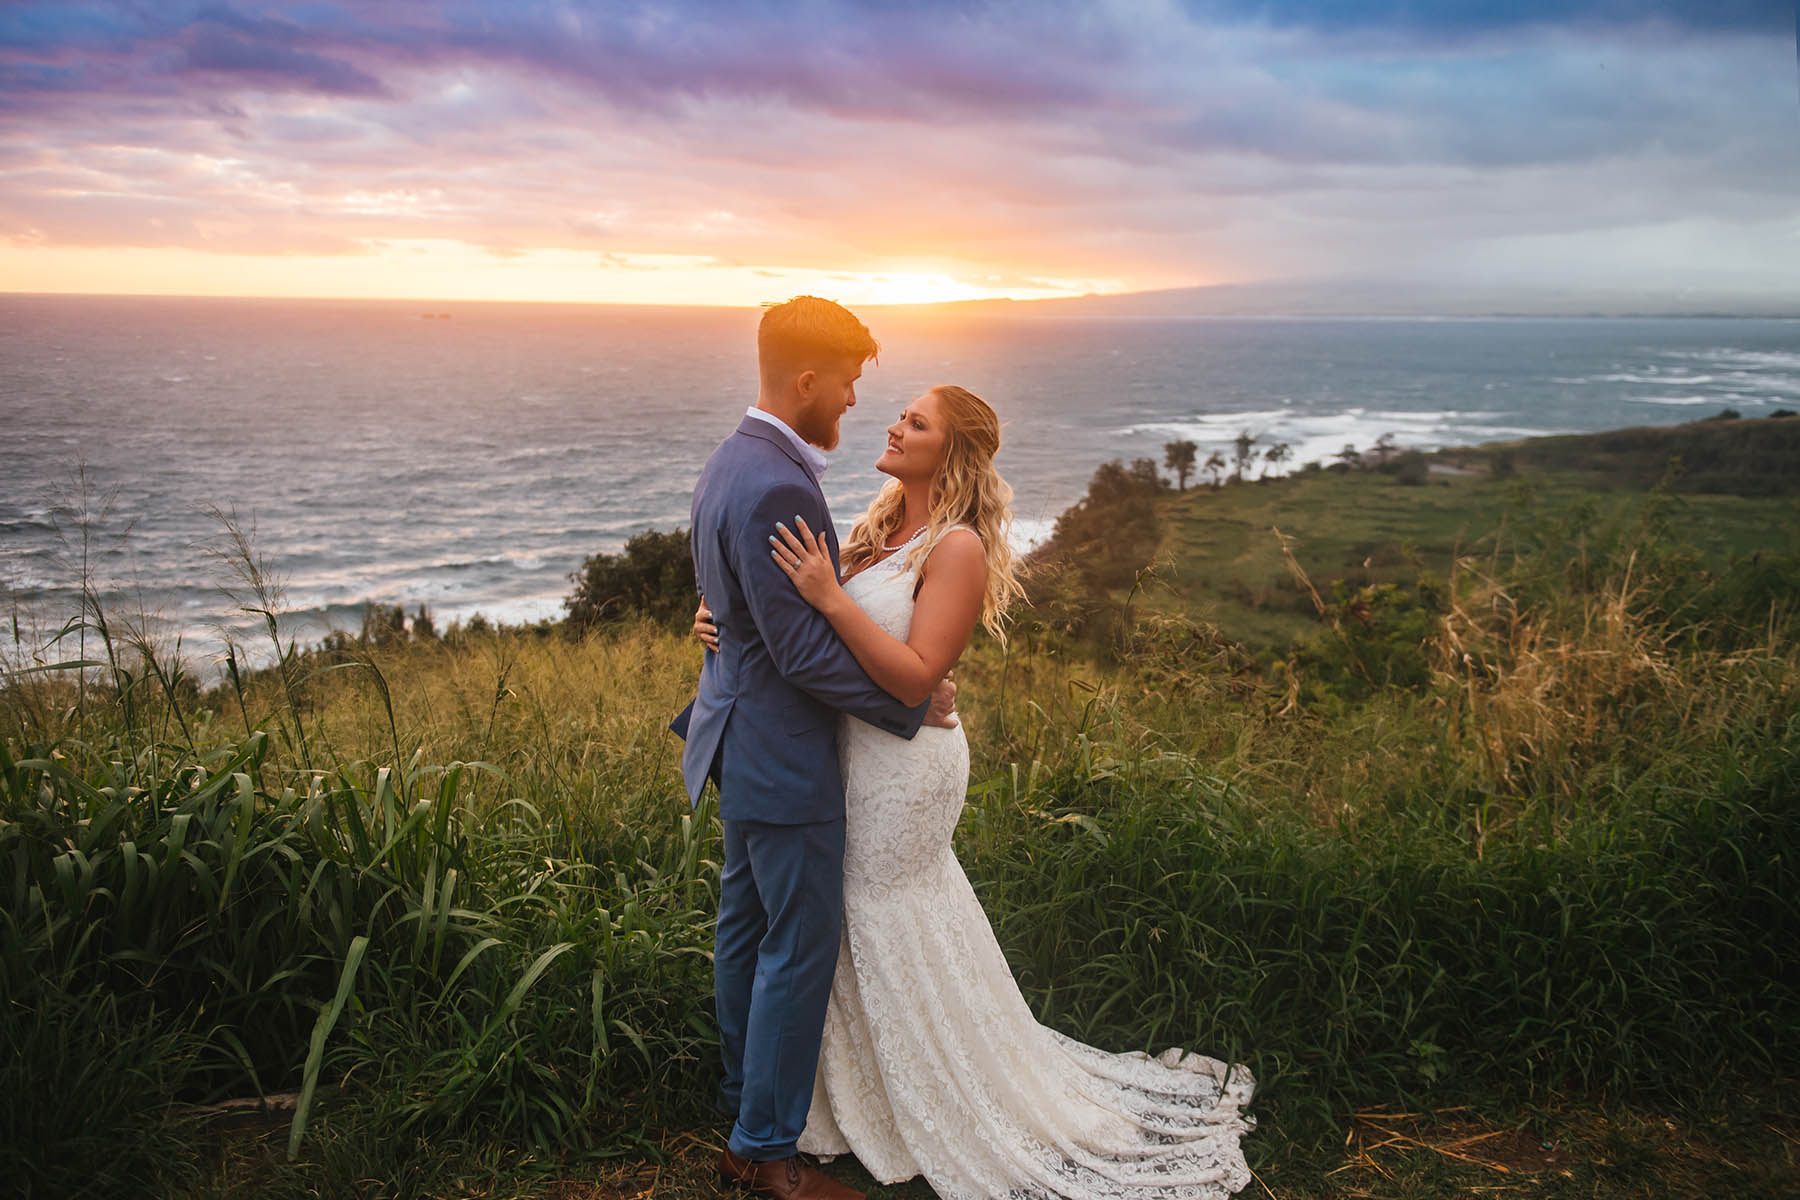 Sunrise wedding shoot in Hawaii